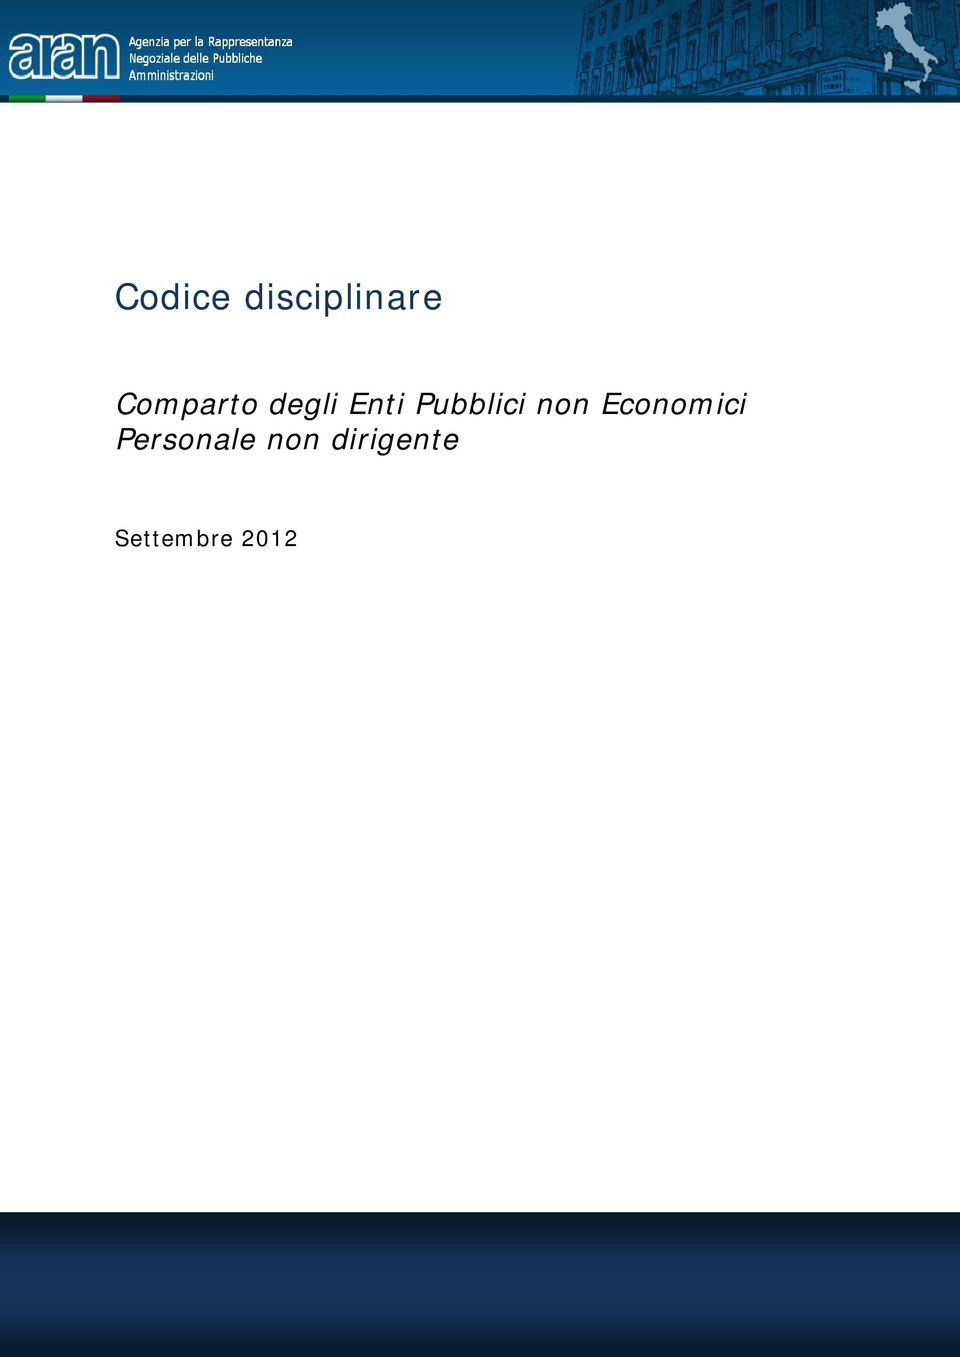 Settembre 2012 Codice disciplinare personale